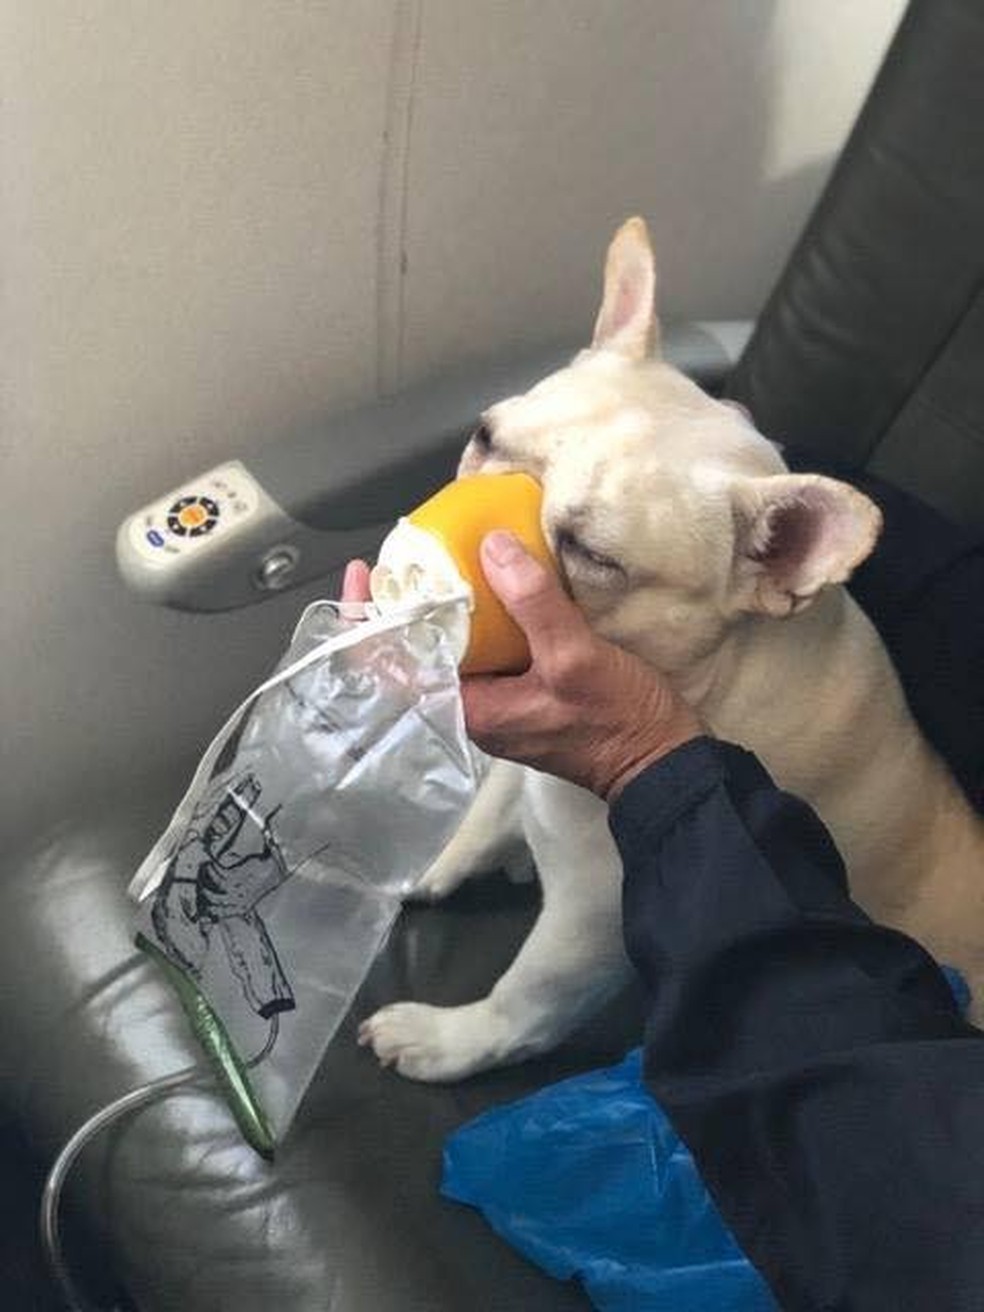 Cachorro recebe atendimento em avião após passar mal (Foto: Michele Burt/Reprodução/Facebook)